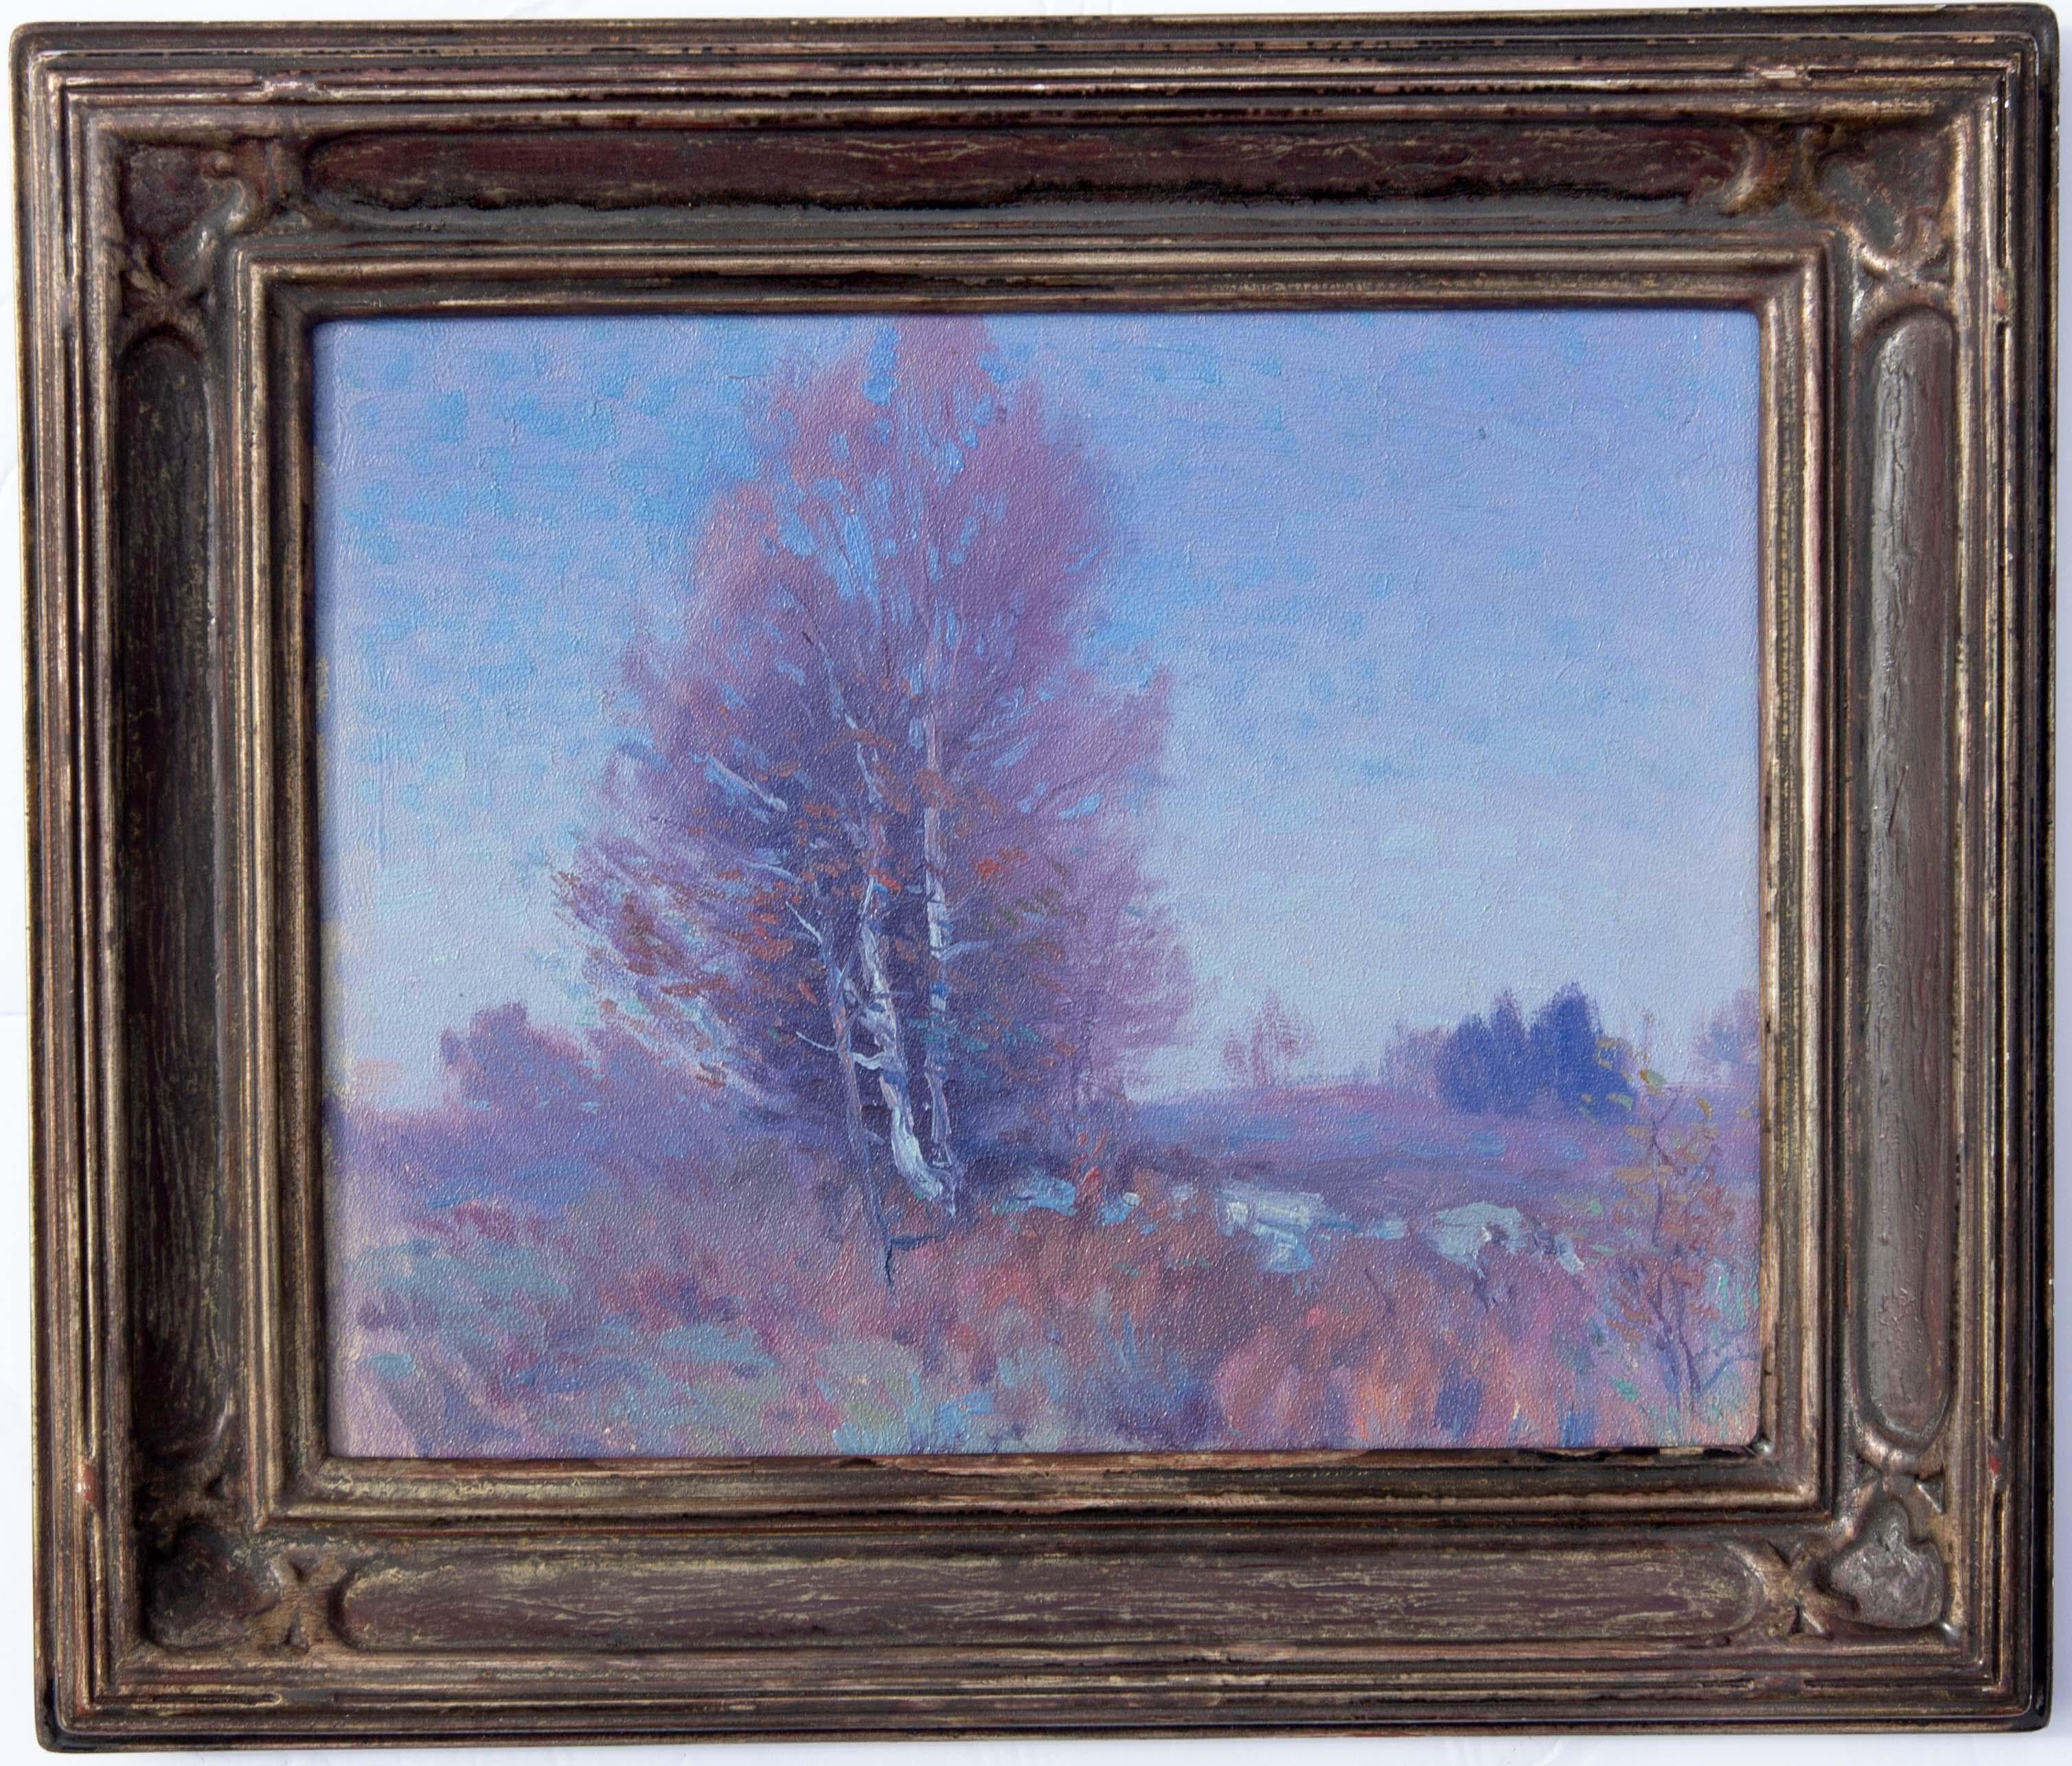 Impressionistische Landschaft von George Renouard. Wunderschöne blaue und malvenfarbene Farbtöne. Öl auf Akademikerkarton. Nicht signiert. Datiert auf der Rückseite 18. Oktober '16. 
George Renouard, der in Rochester, New York, geboren wurde und